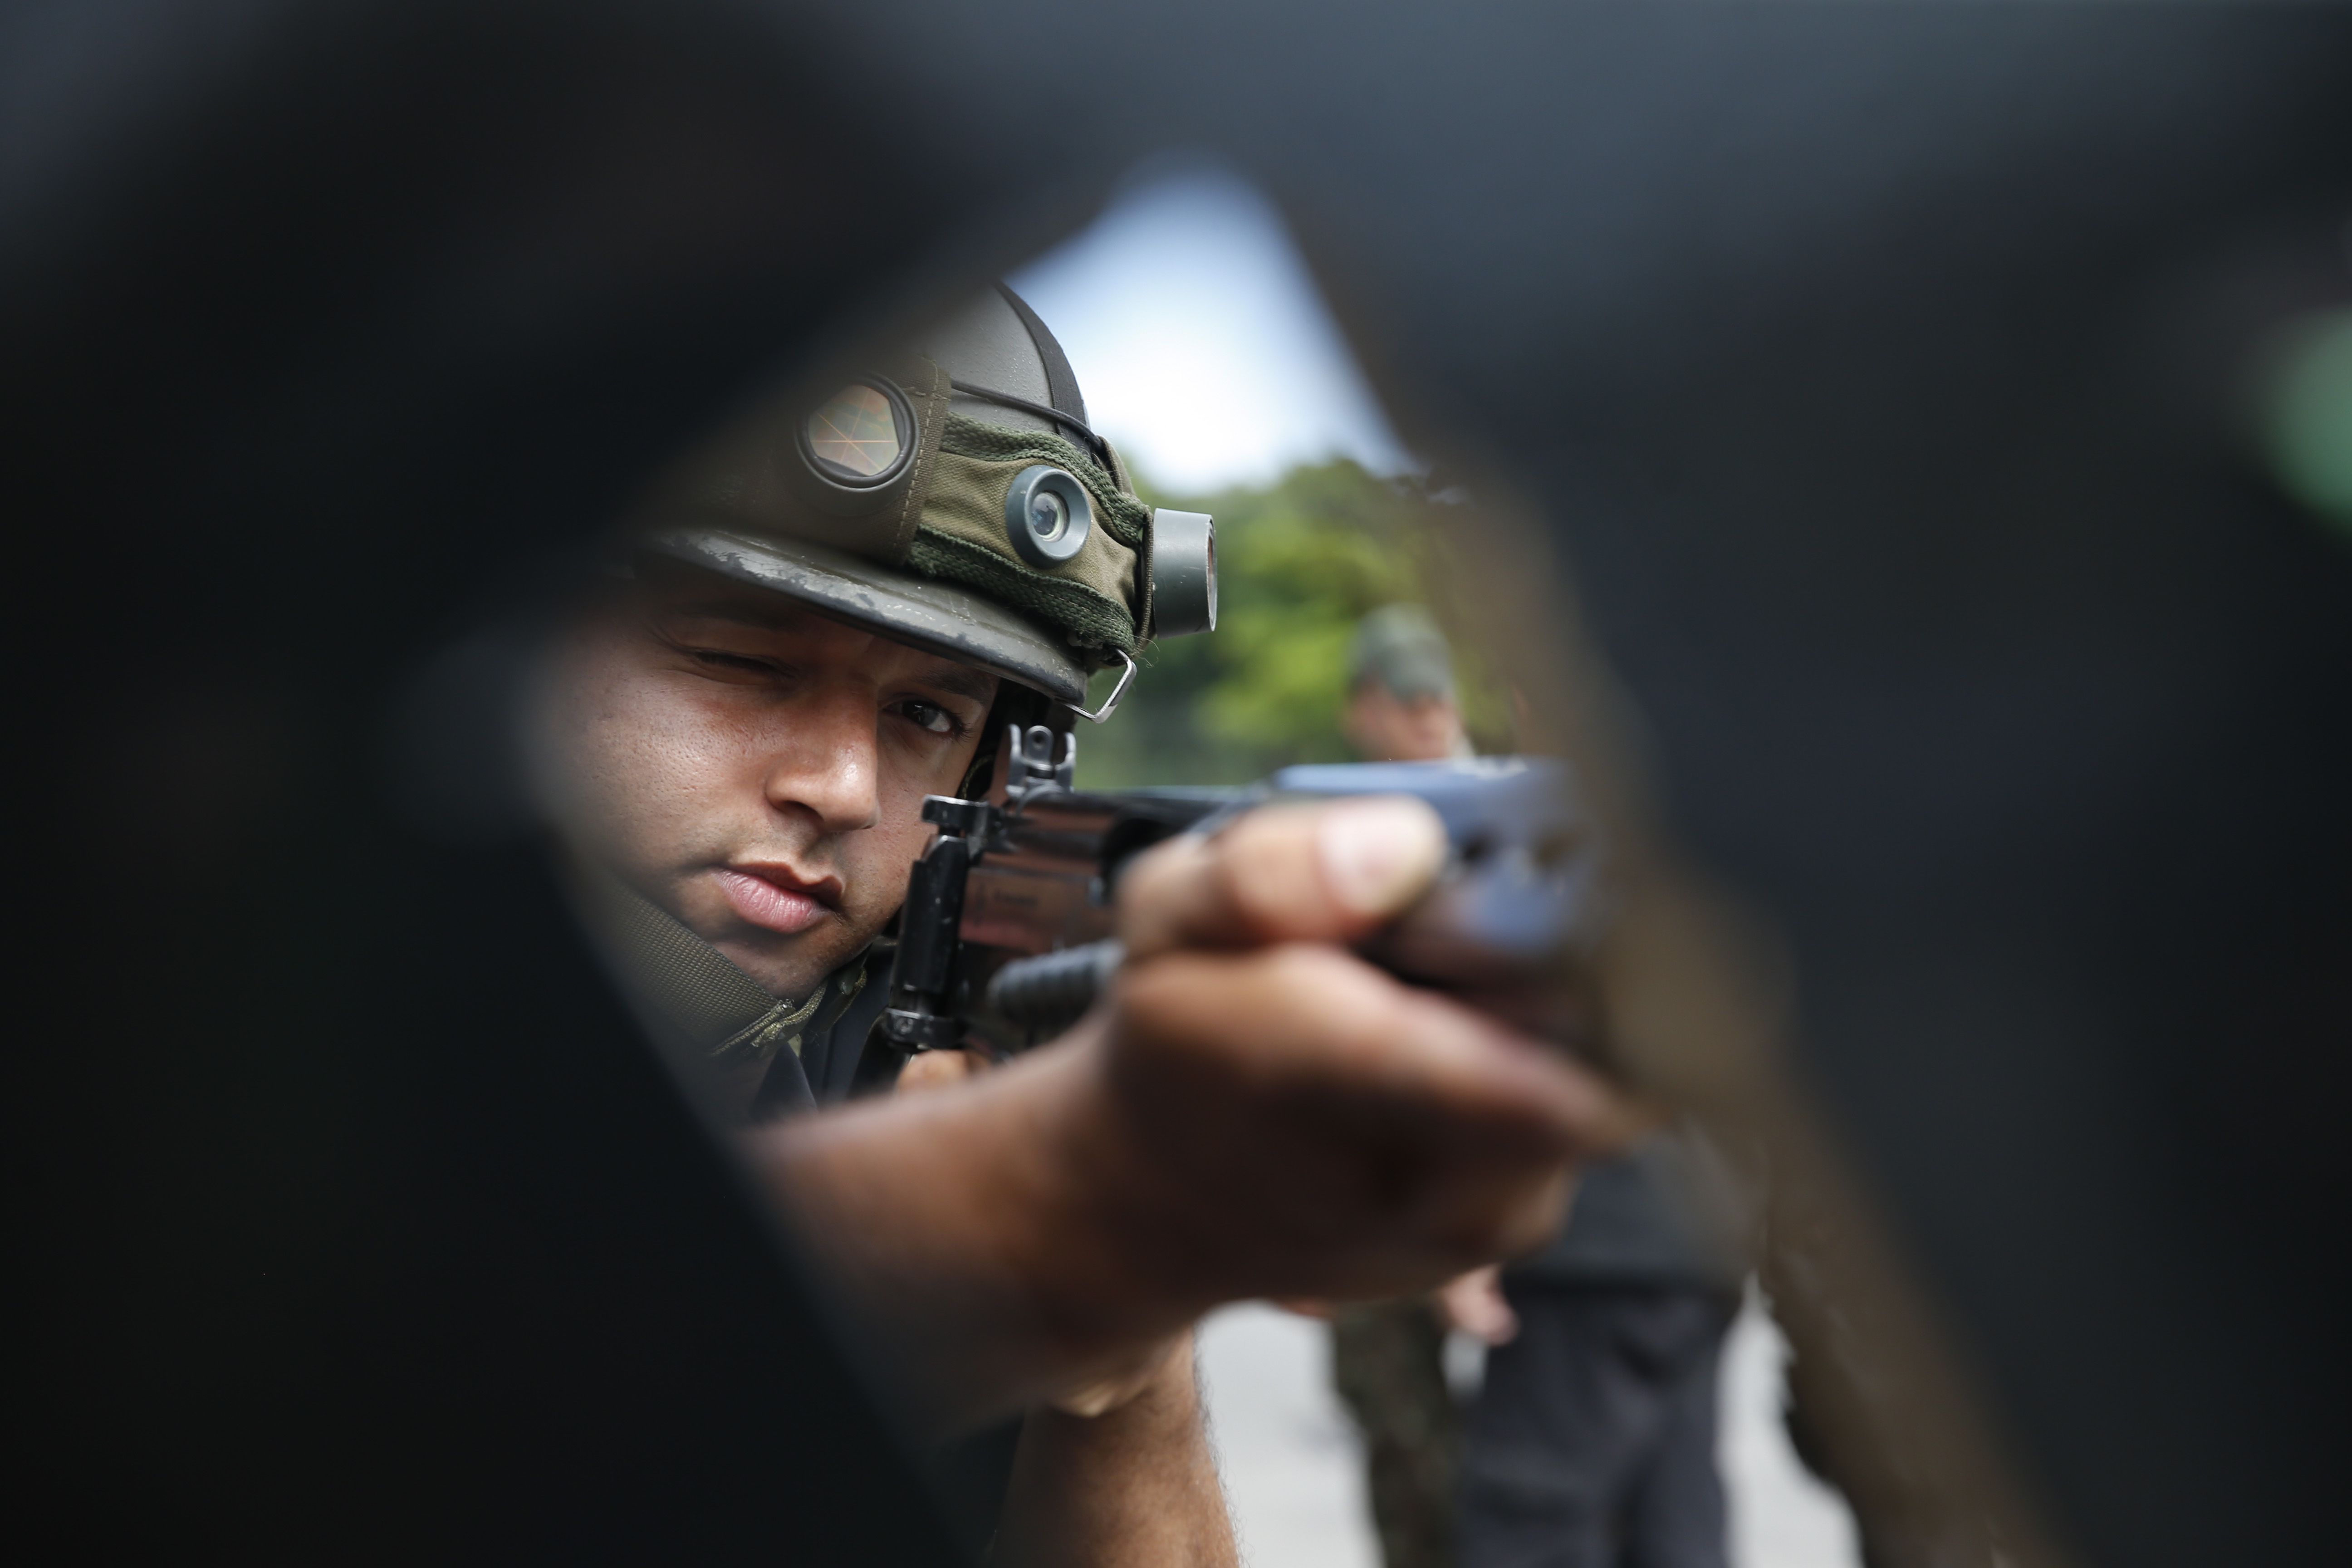 Relatório do Observatório da Intervenção mostra que todos os principais índices de violência aumentaram durante tutela militar da segurança pública do Rio de Janeiro